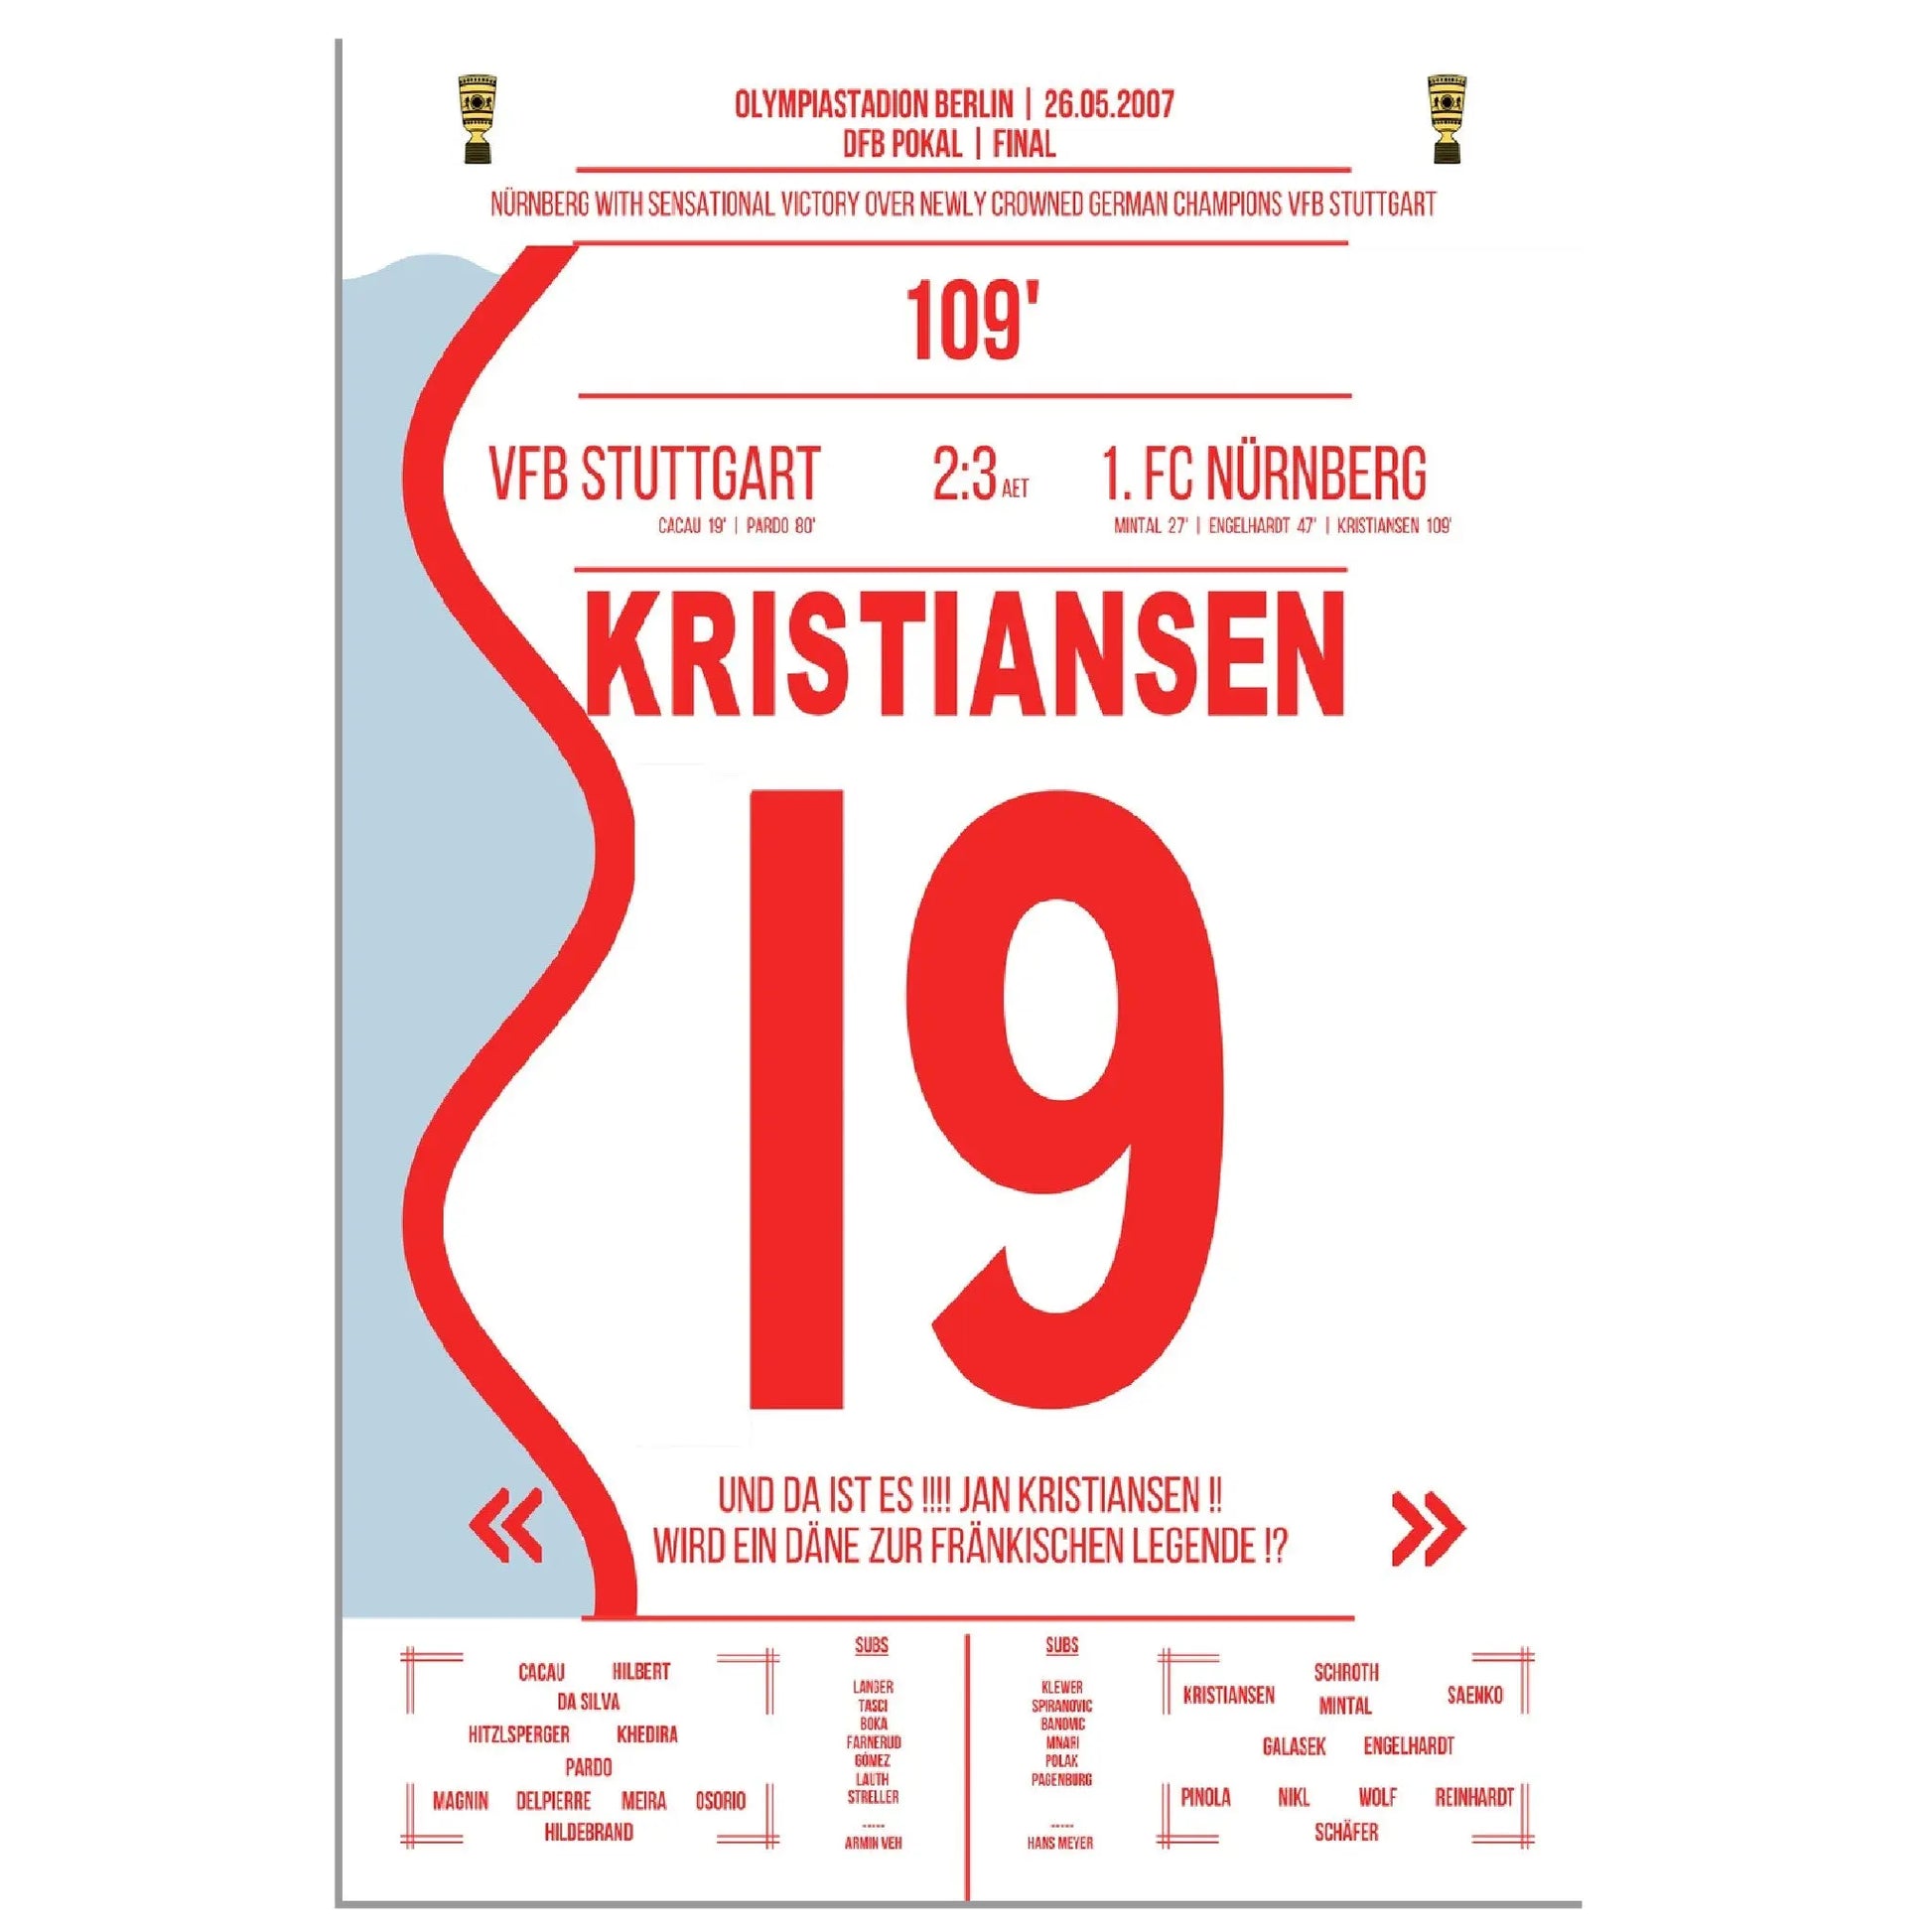 Kristiansen trifft zum Pokalsieg für Nürnberg im DFB Pokal Finale 2007 